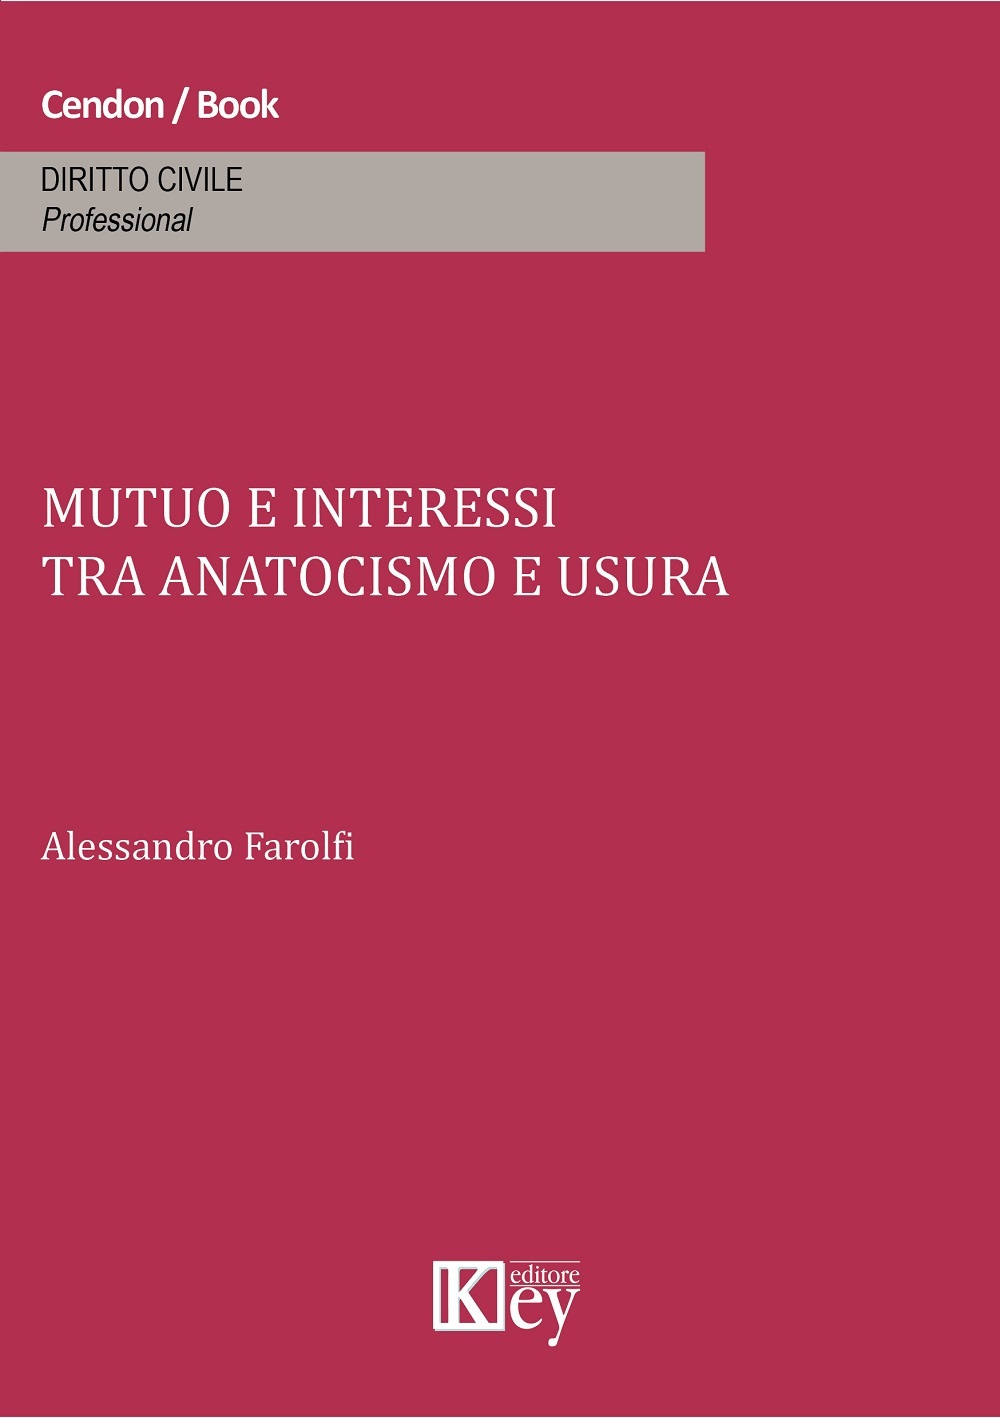 Libri Alessandro Farolfi - Mutuo E Interessi Tra Anatocismo E Usura NUOVO SIGILLATO, EDIZIONE DEL 24/01/2015 SUBITO DISPONIBILE